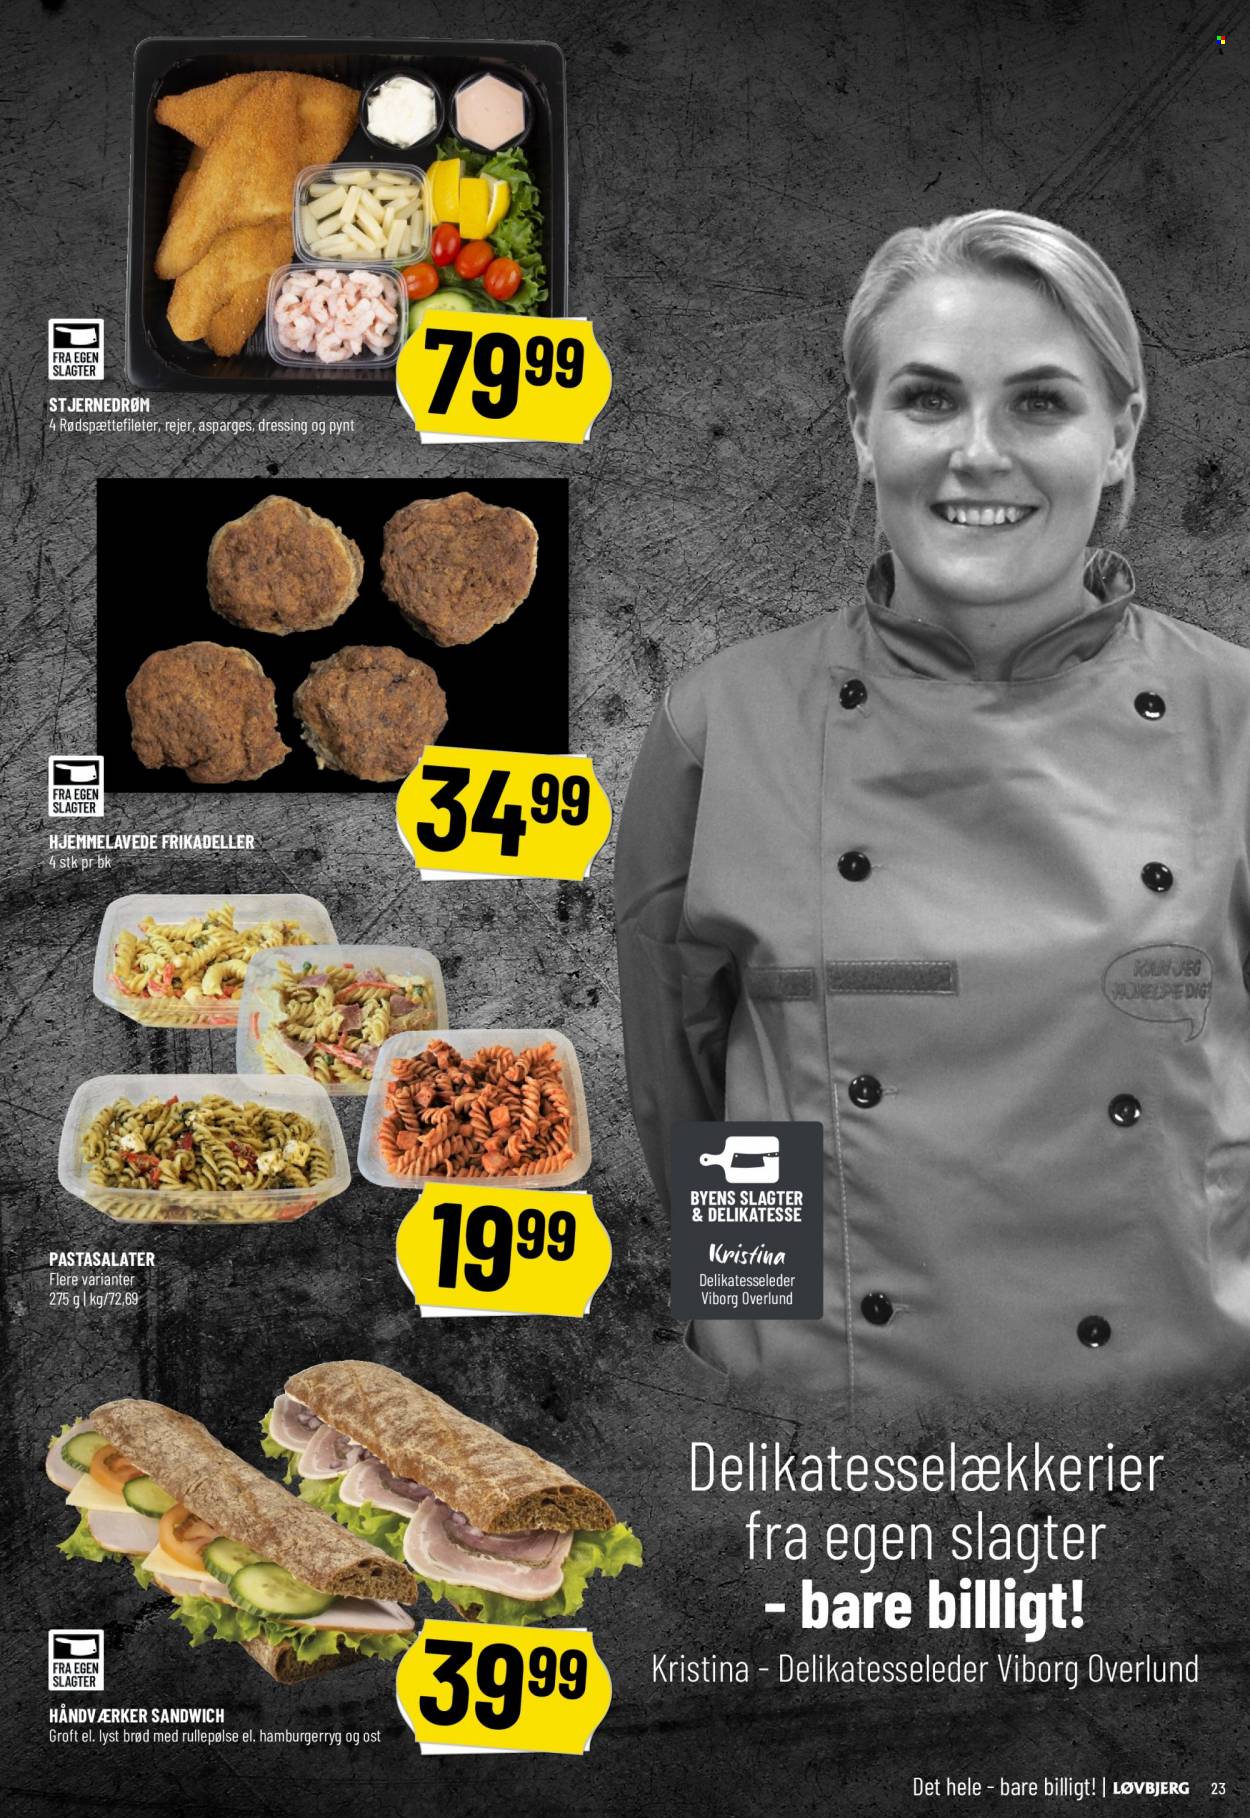 thumbnail - Løvbjerg tilbud  - 24.3.2023 - 30.3.2023 - tilbudsprodukter - asparges, hamburgerryg, sandwich, brød, rejer, rødspætte, frikadeller. Side 23.